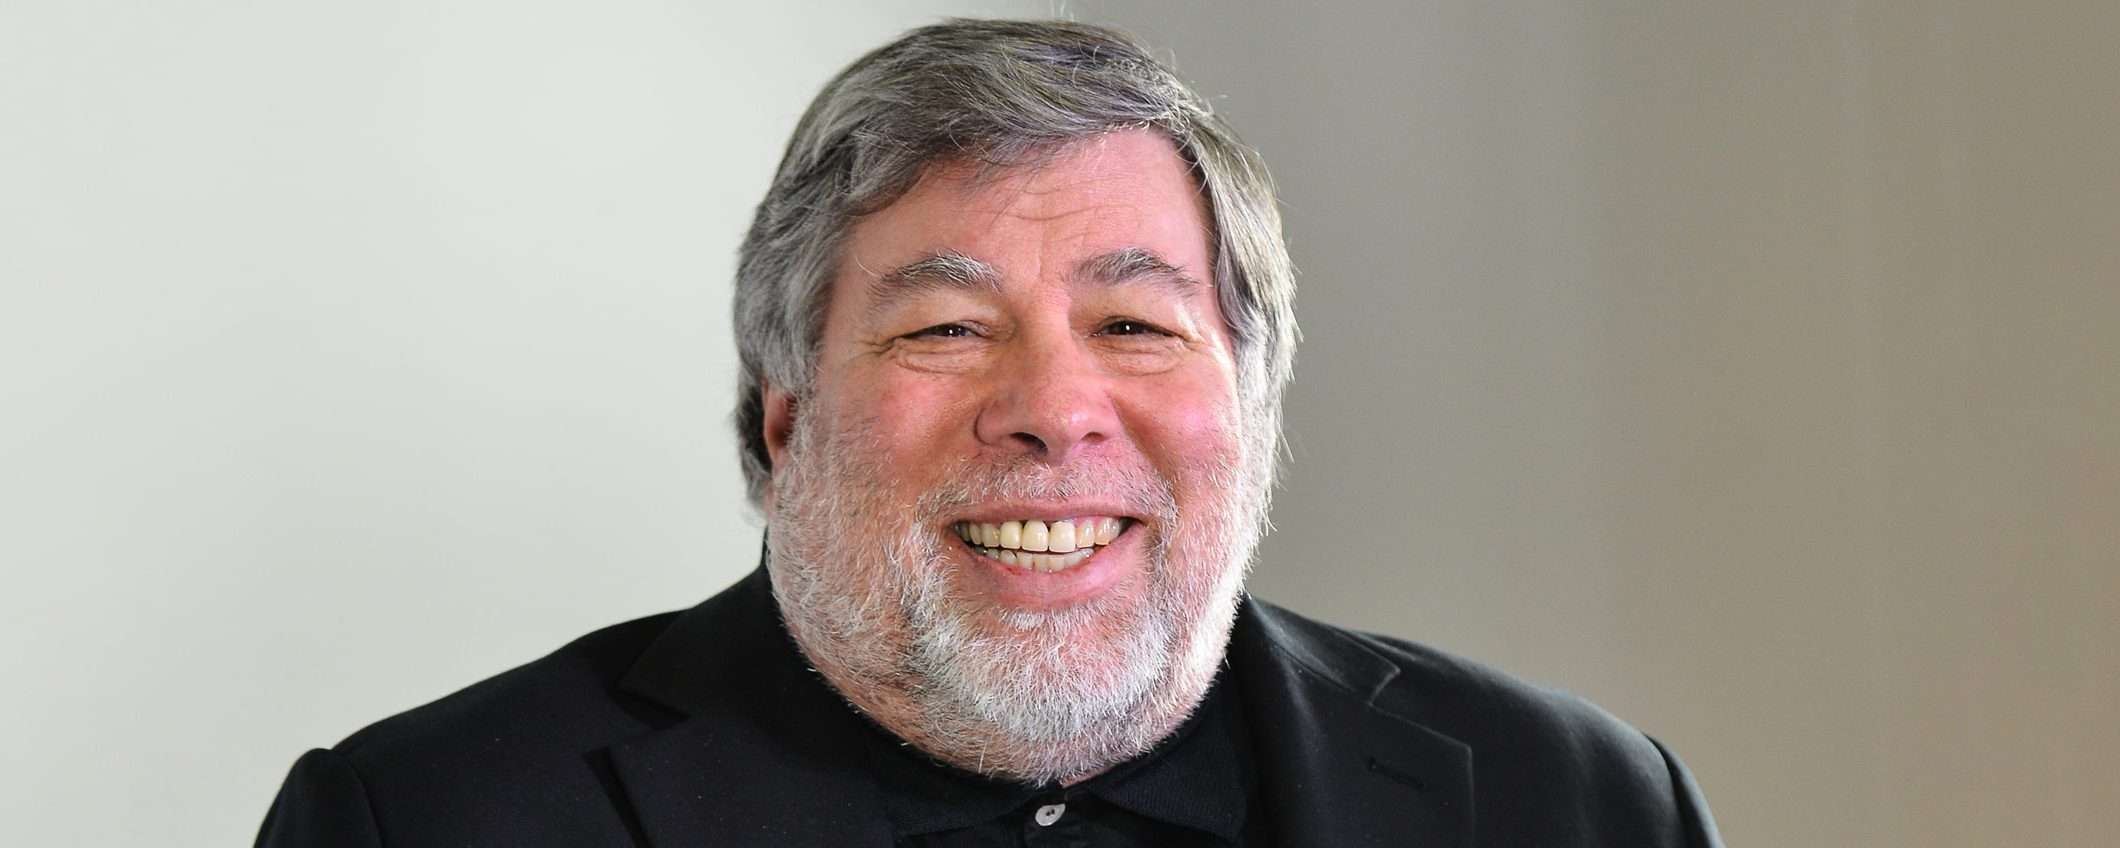 Steve Wozniak, ricoverato il co-fondatore Apple